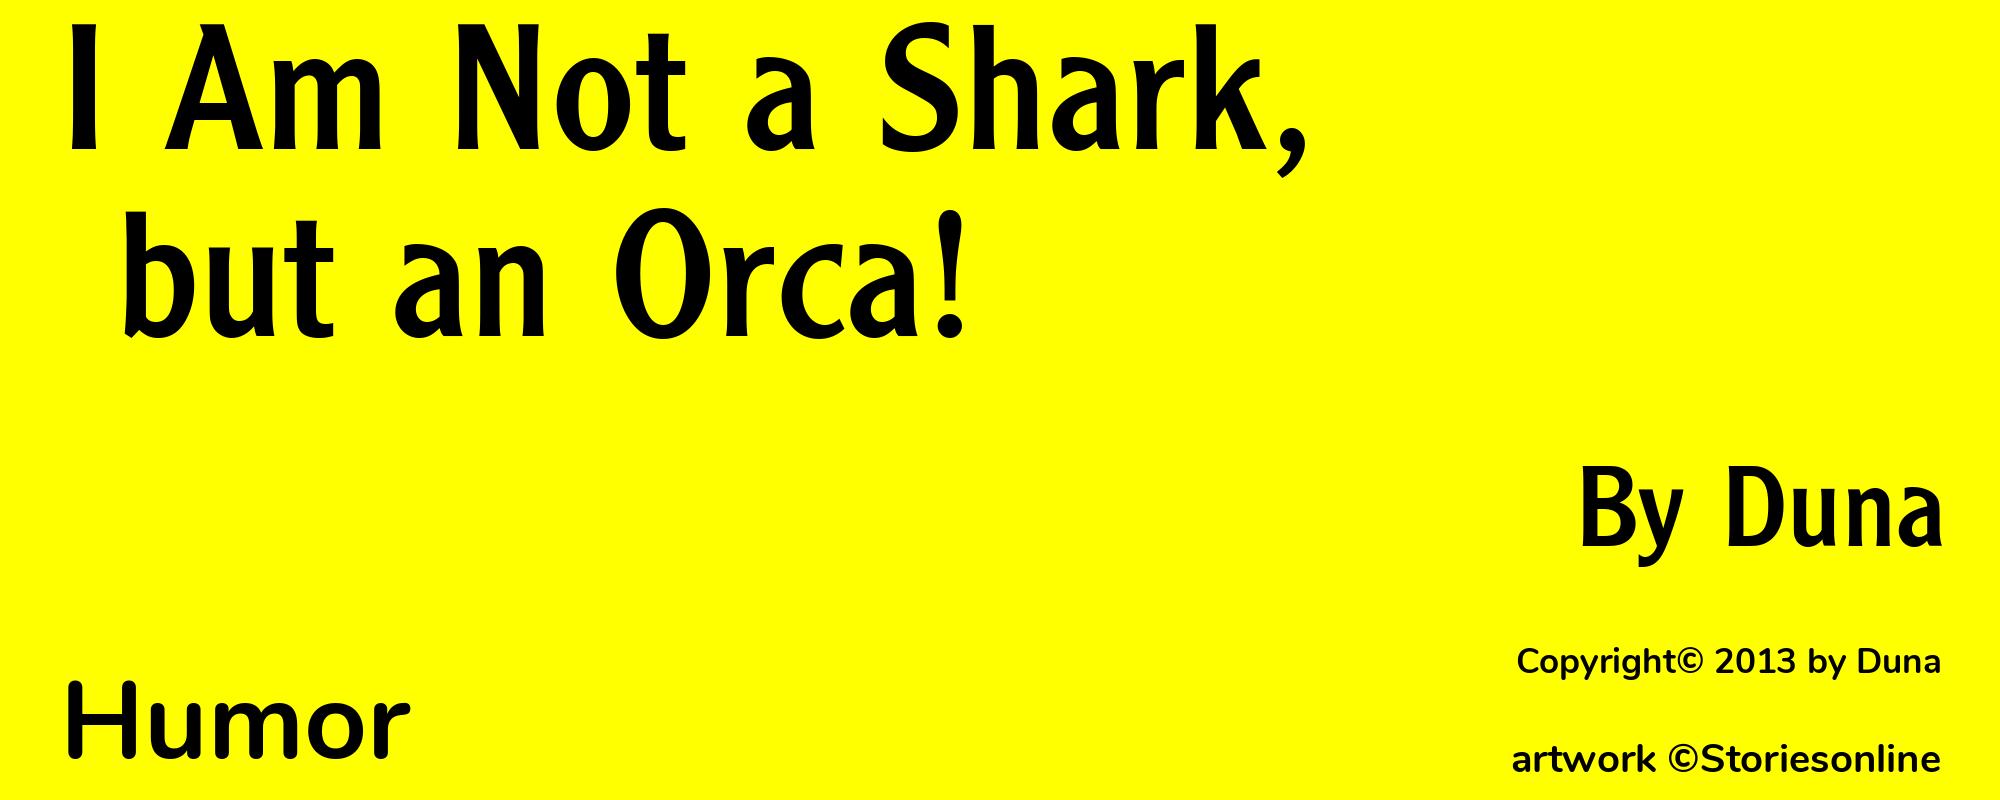 I Am Not a Shark, but an Orca! - Cover